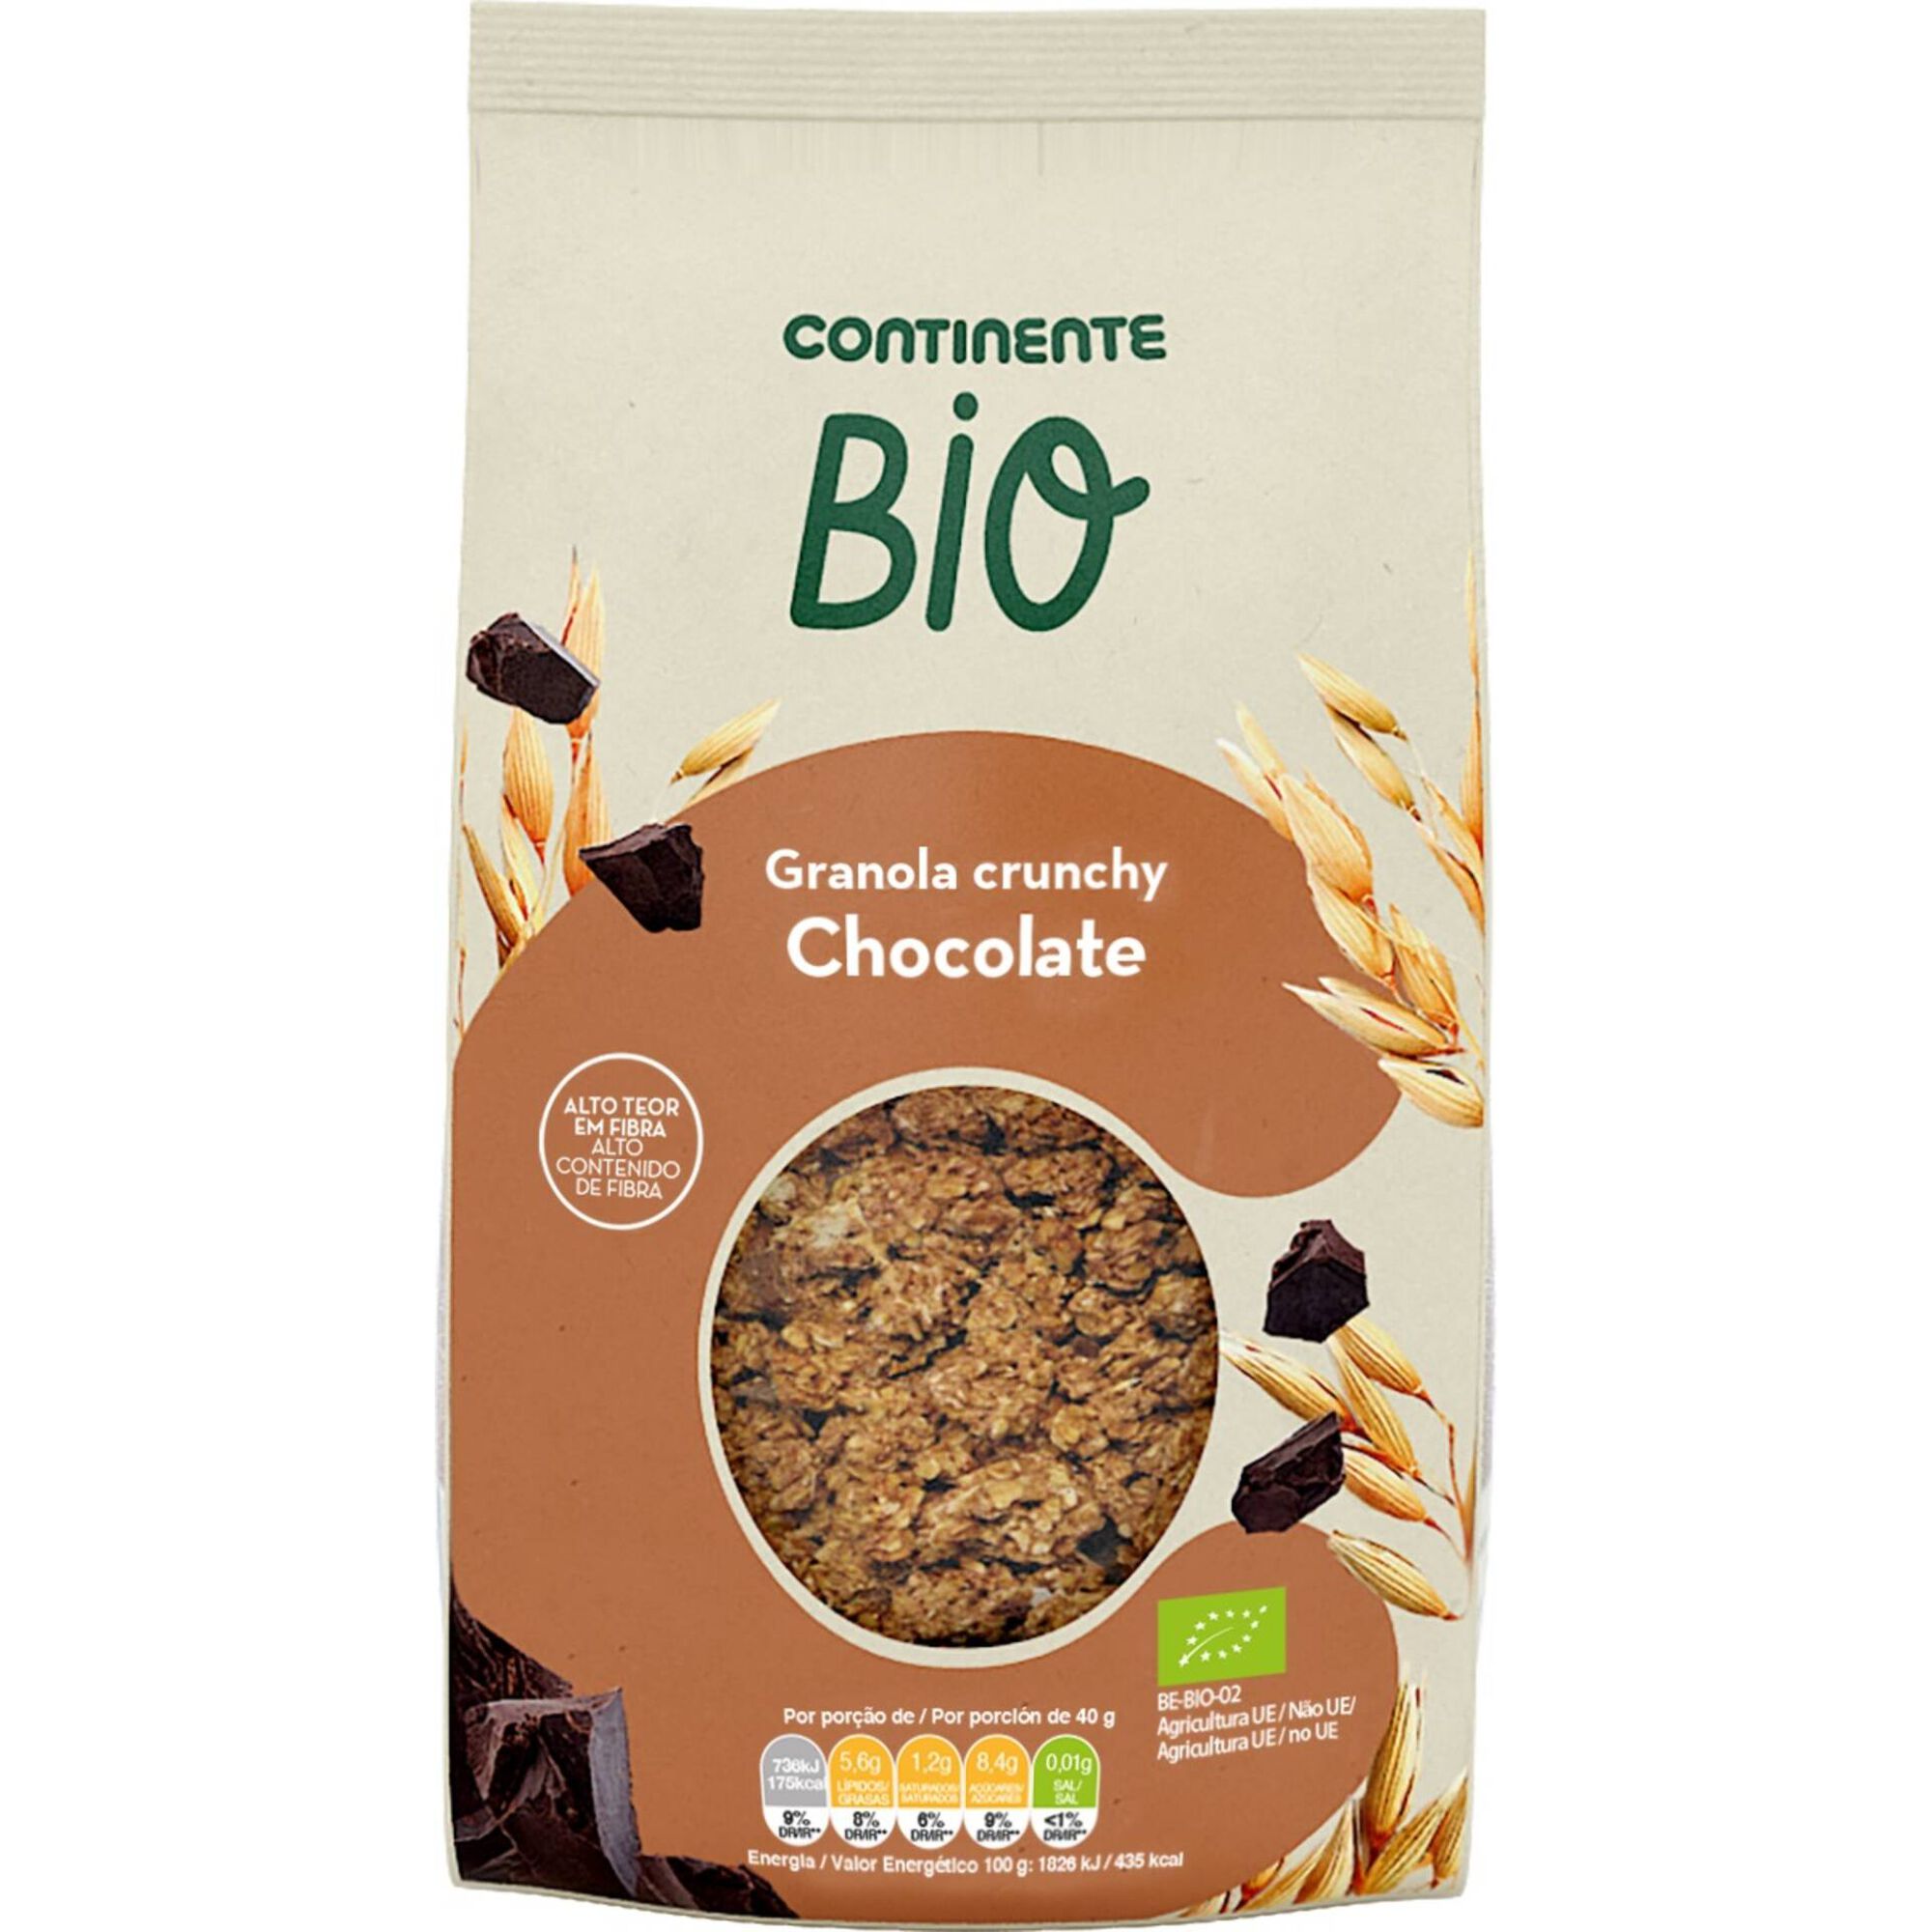 Granola Crunchy Chocolate Biológica